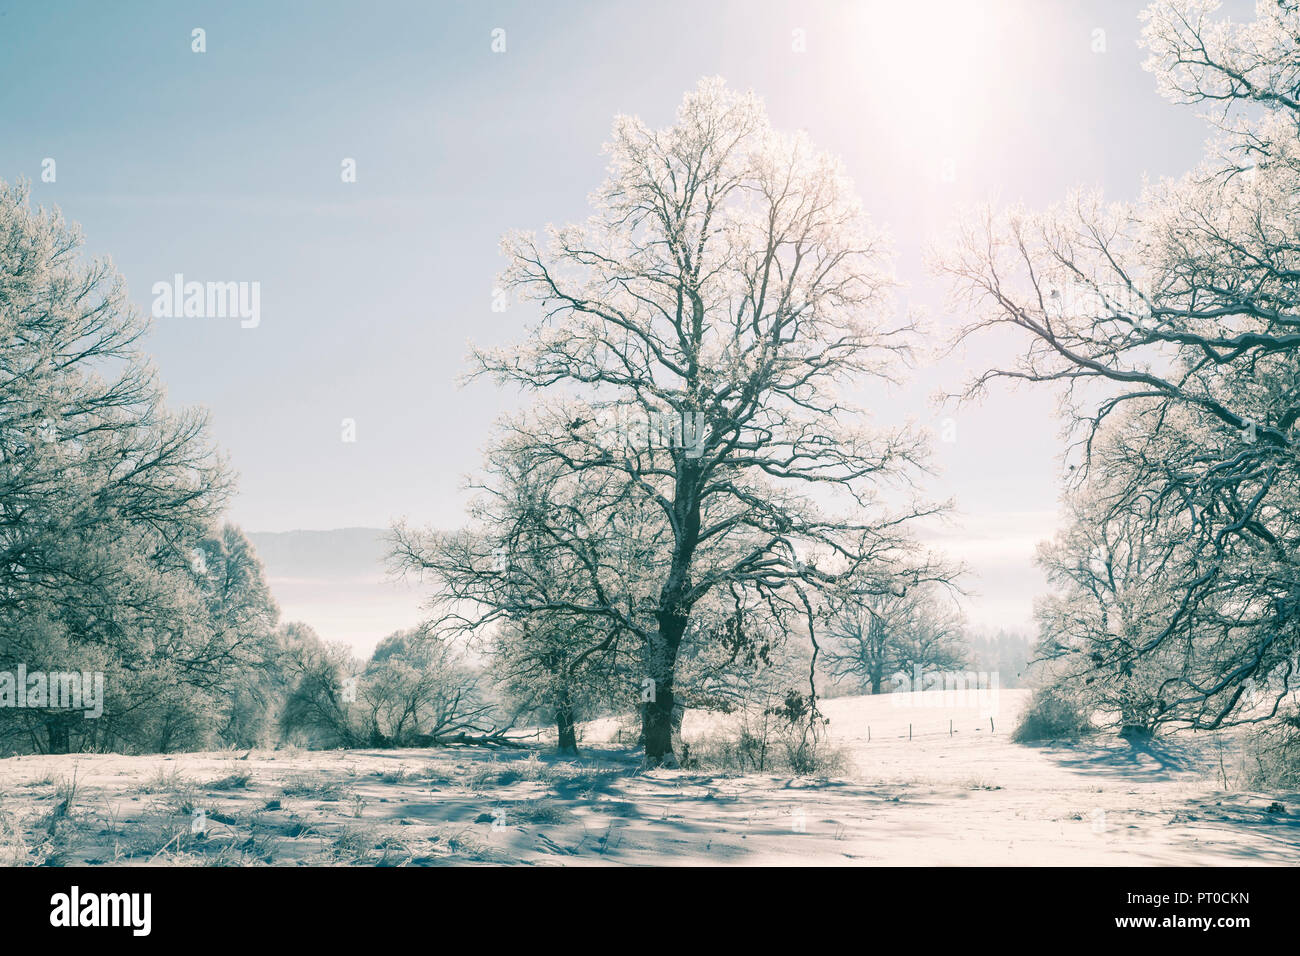 El invierno, con hielo, nieve y árboles en la helada frialdad. Foto de stock